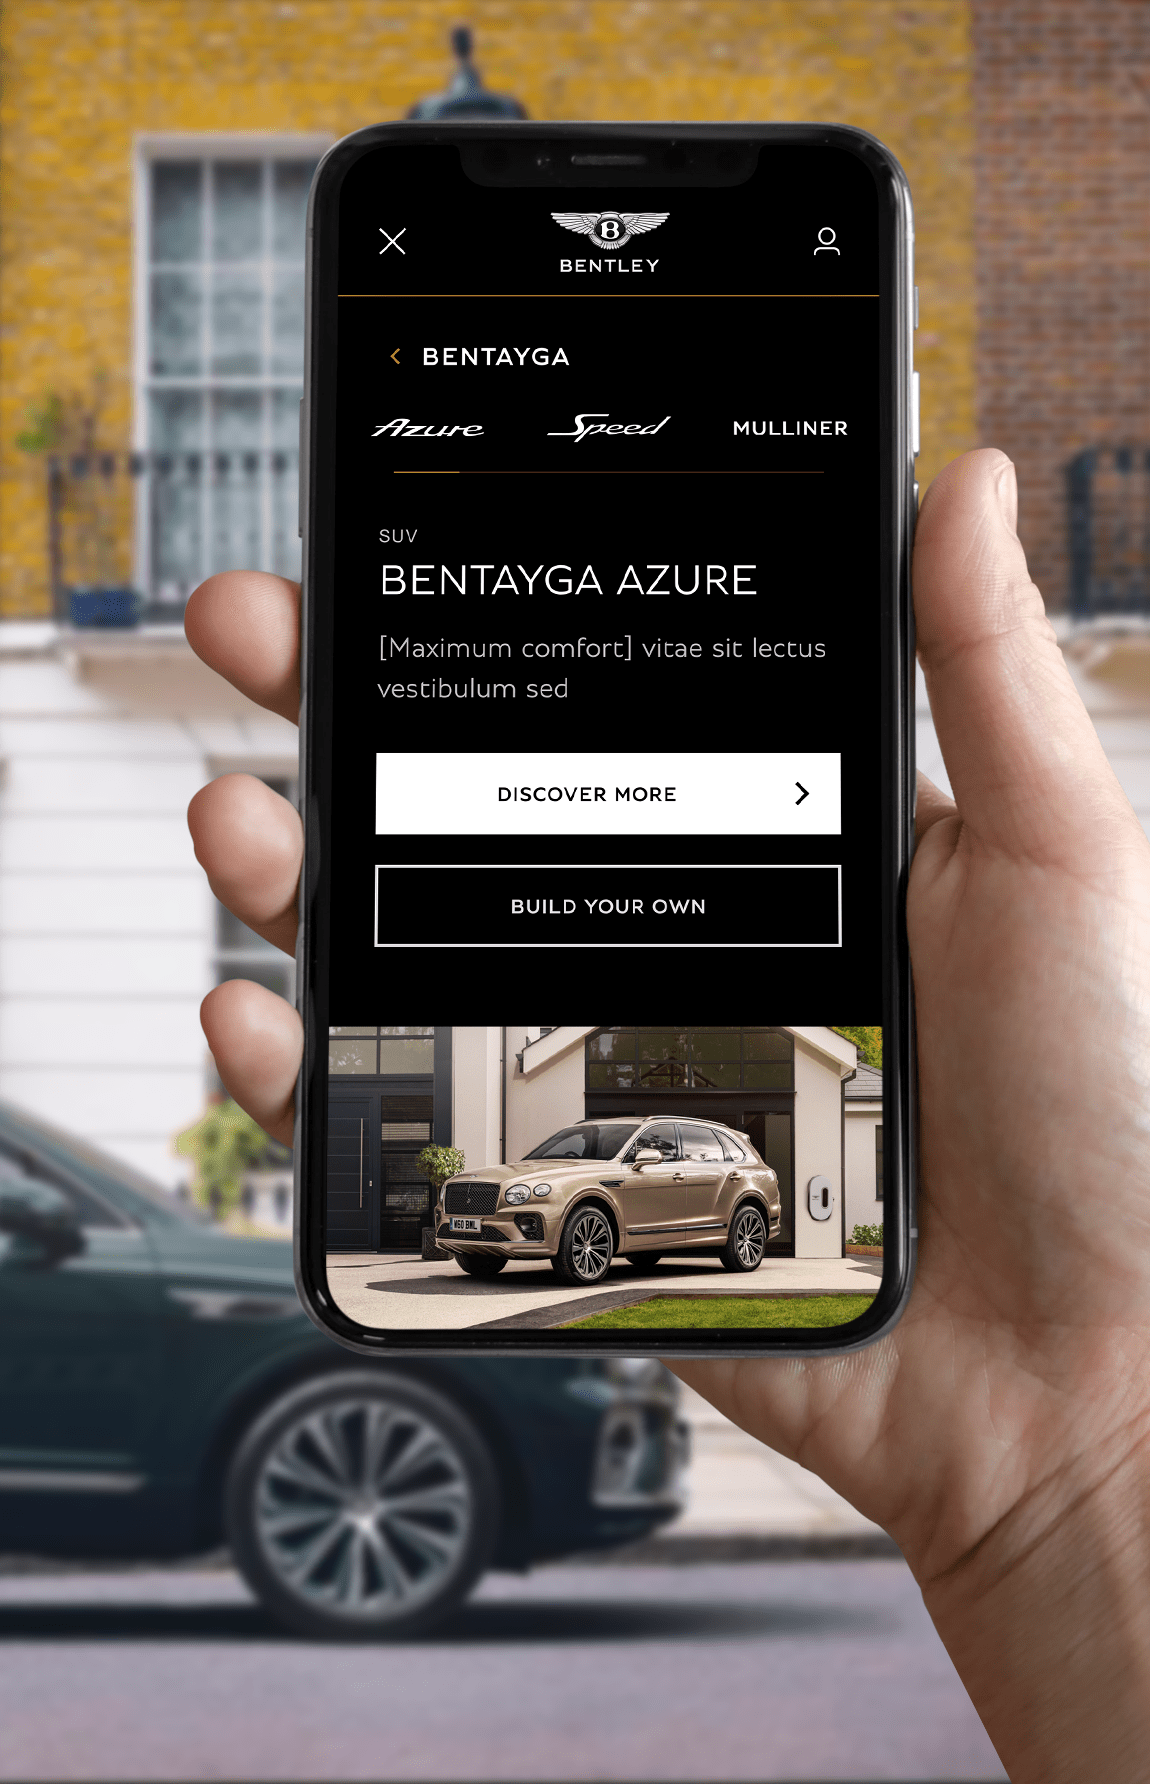 Bentley Motors website displayed on iPhone screen